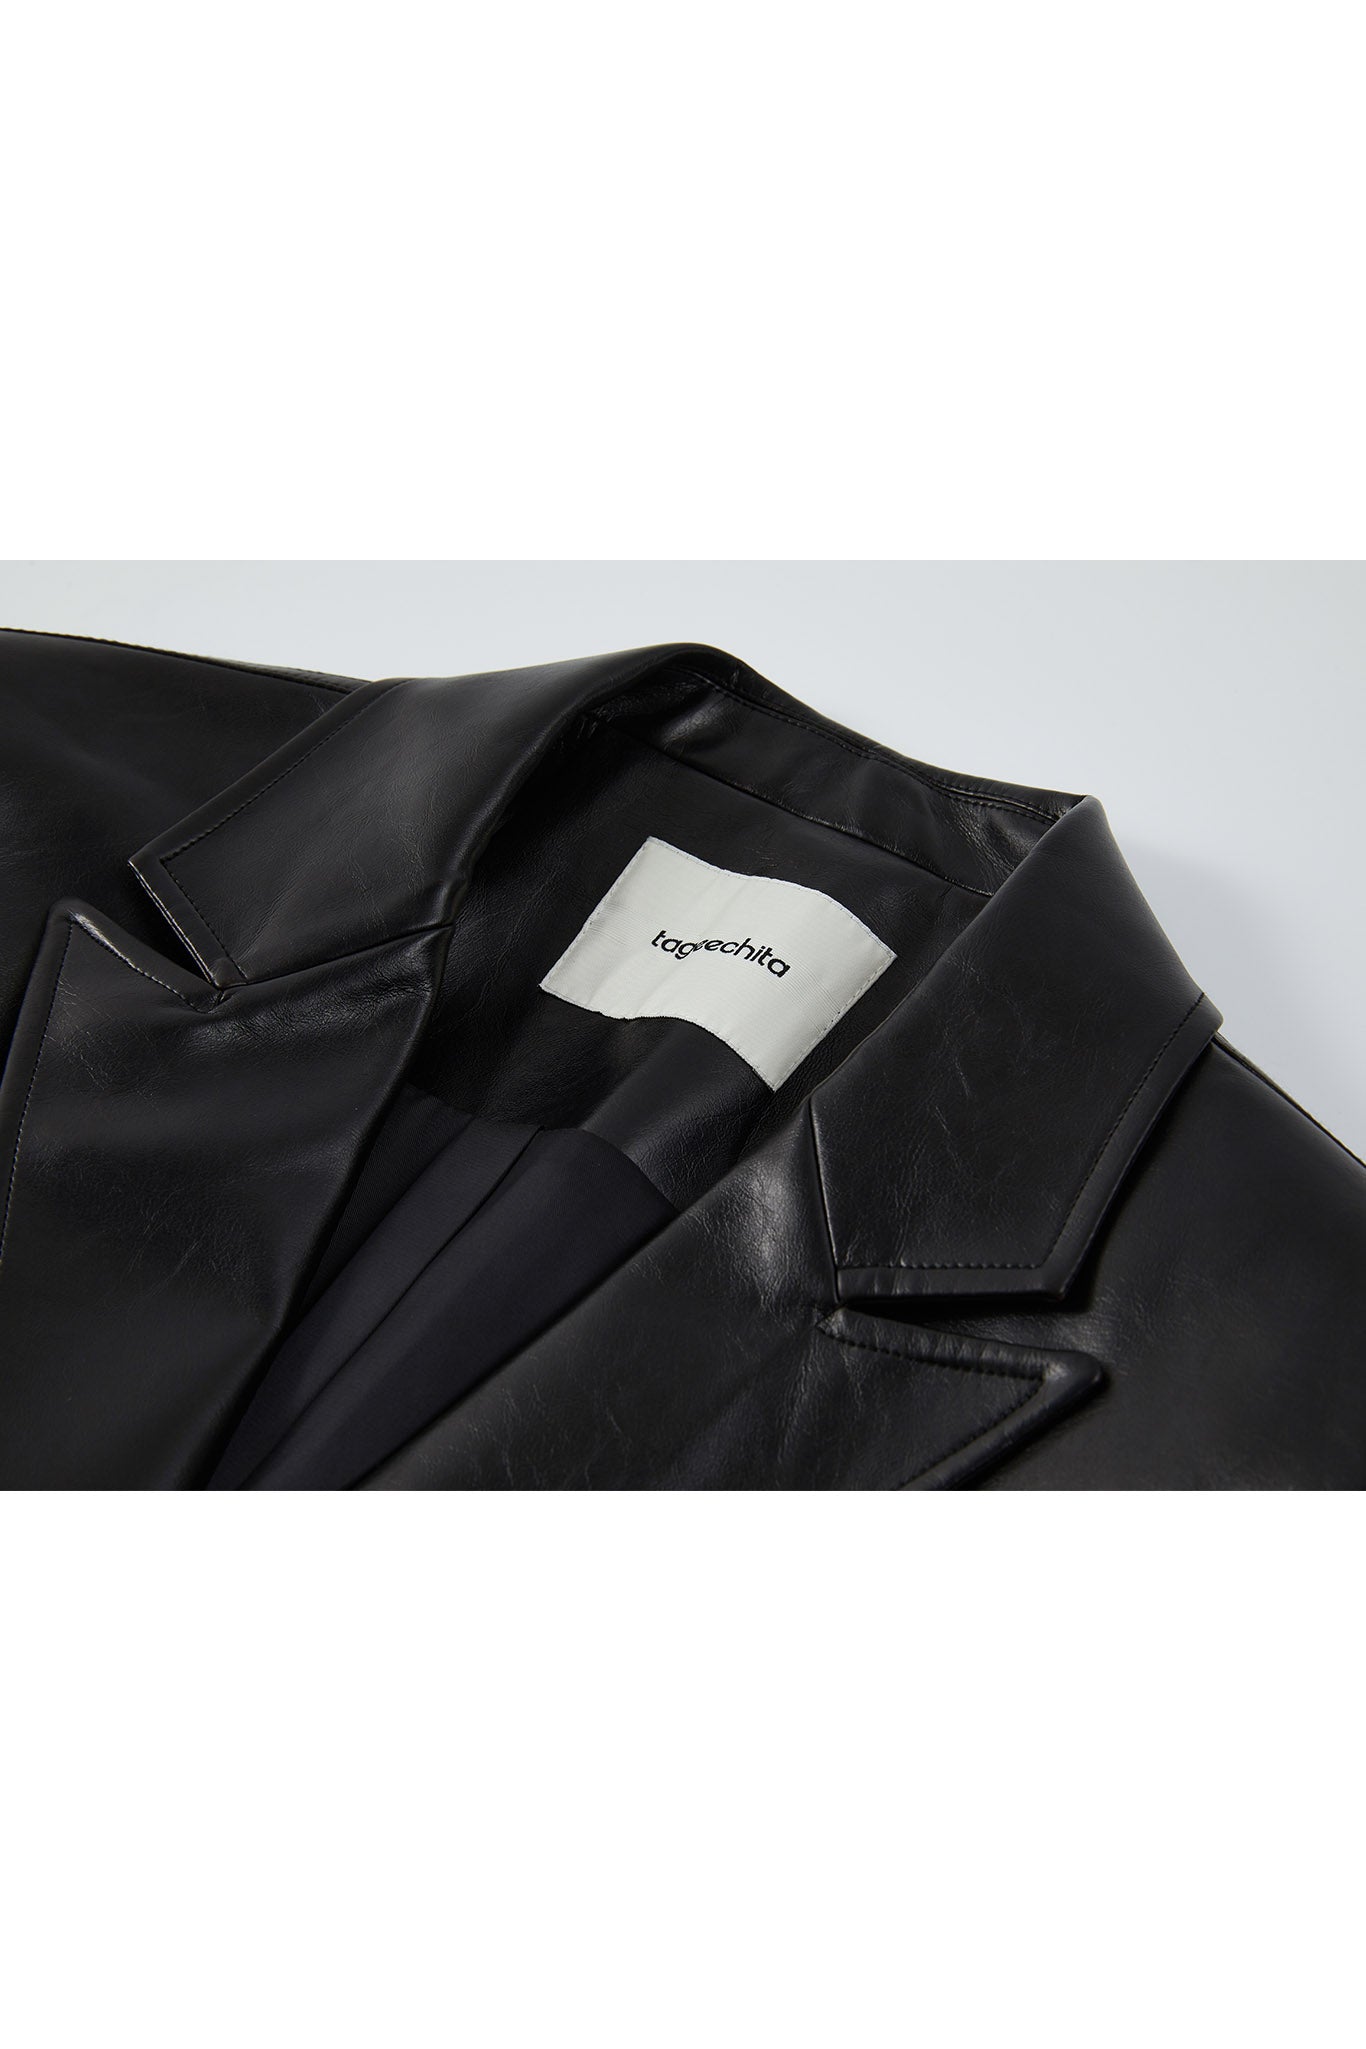 [tageechita] Short length fake leather jacket